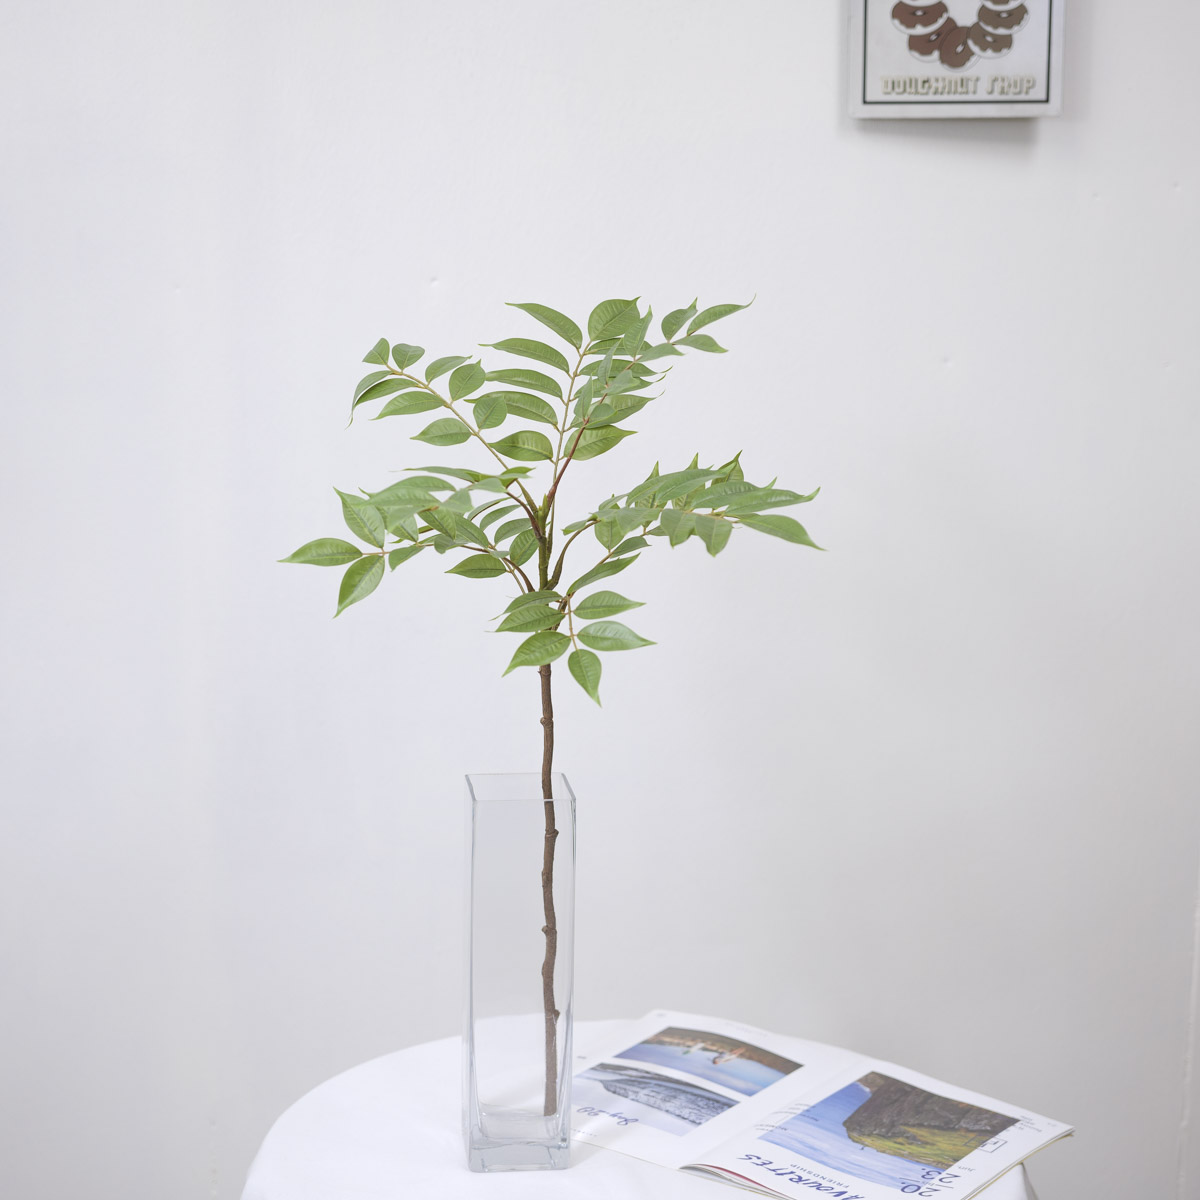 조화나무 참죽나무가지 75cm 그린 화병에 한줄기 꽂아 테이블에 장식한 사진